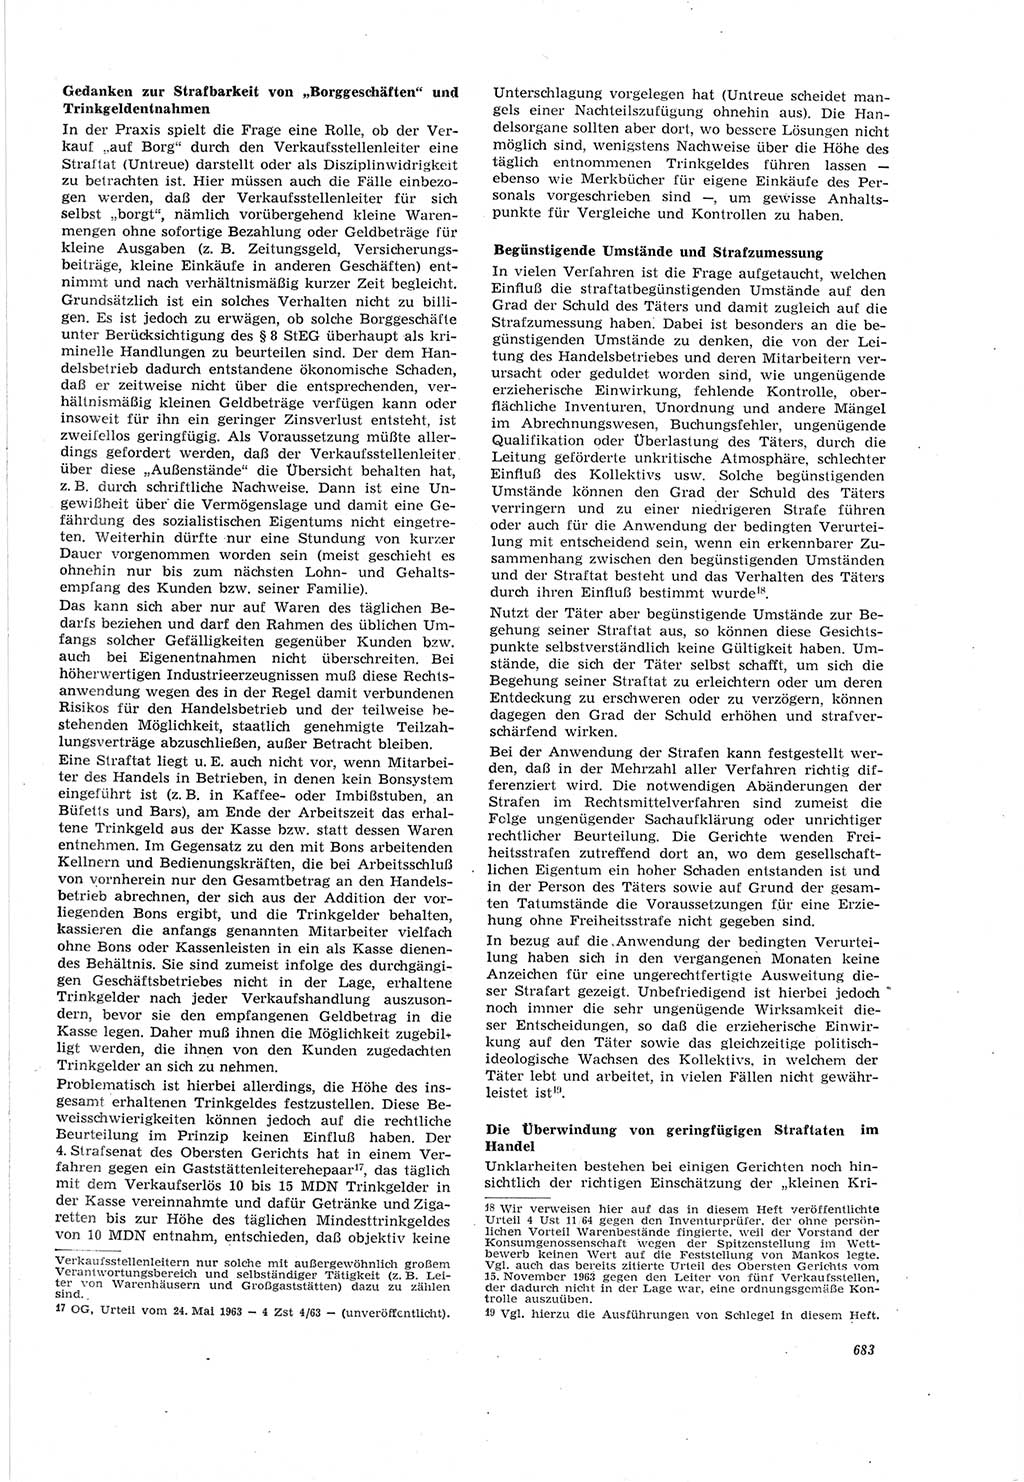 Neue Justiz (NJ), Zeitschrift für Recht und Rechtswissenschaft [Deutsche Demokratische Republik (DDR)], 18. Jahrgang 1964, Seite 683 (NJ DDR 1964, S. 683)